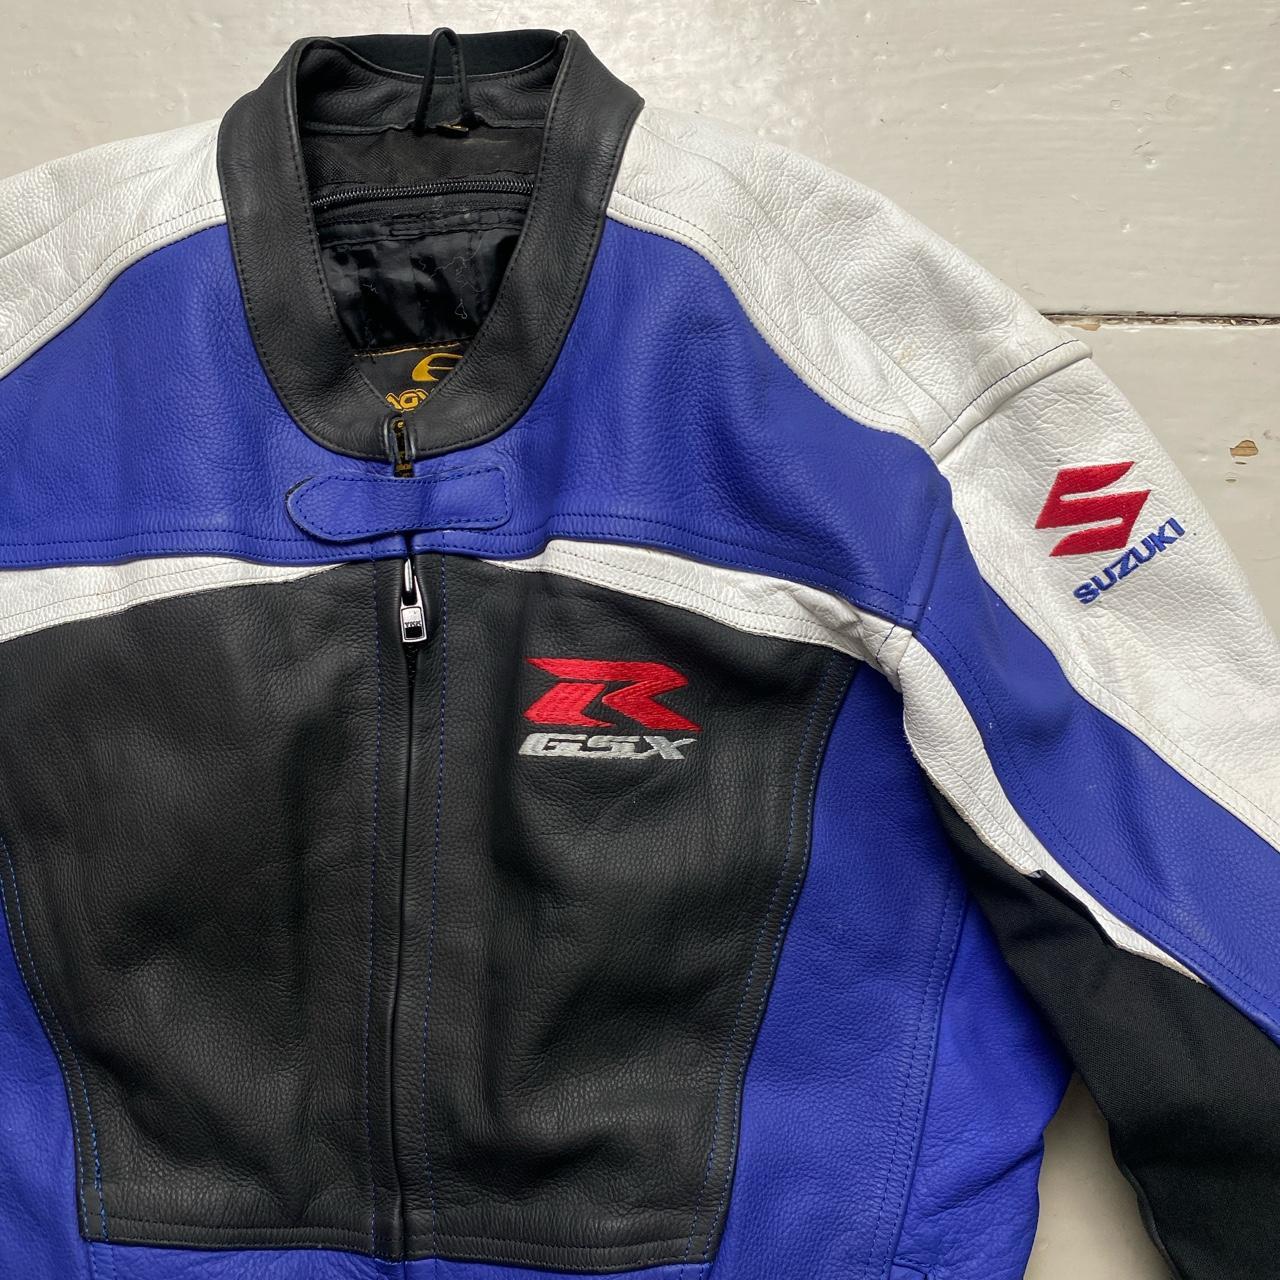 Suzuki R GSX Blue White Black and Red Leather Motorcycle Biker Jacket